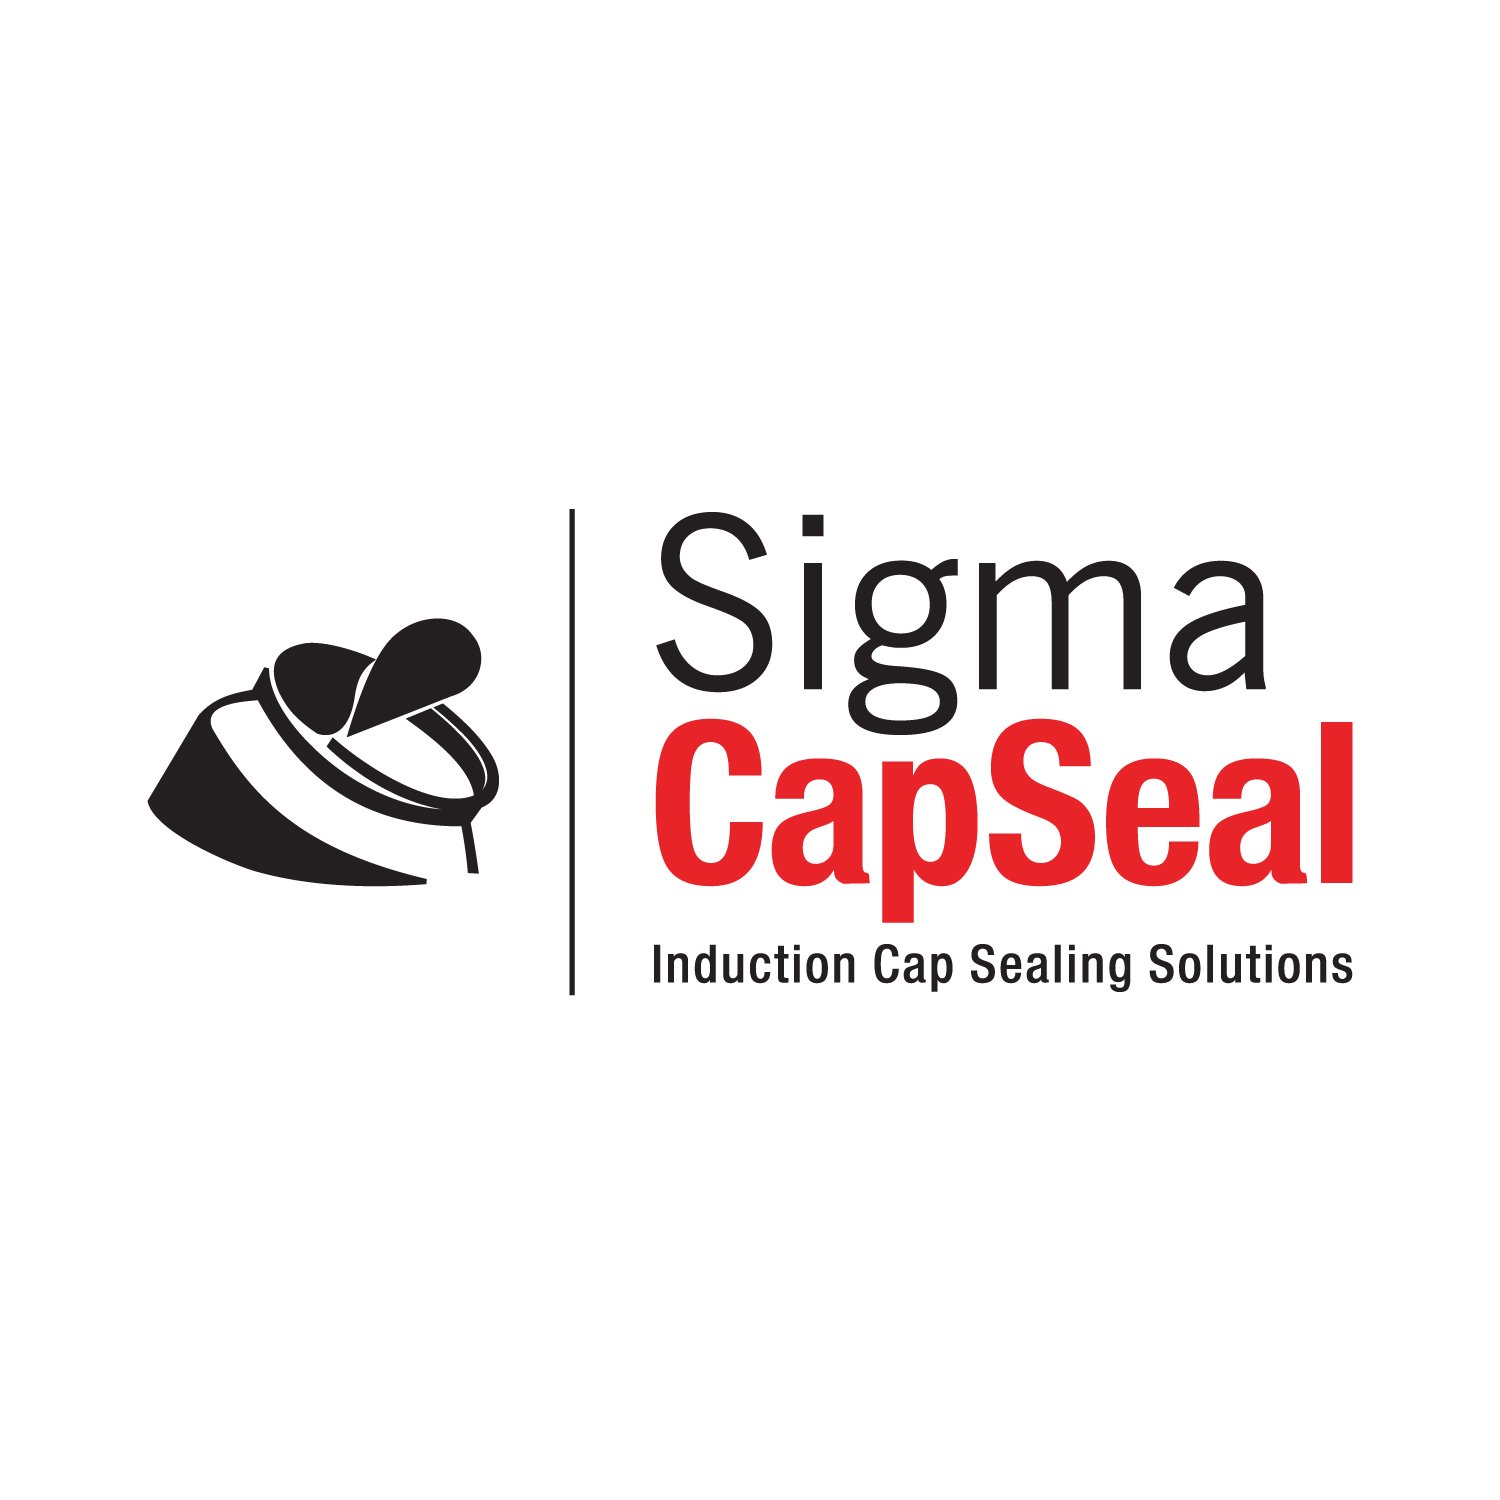 Sigma CapSeal